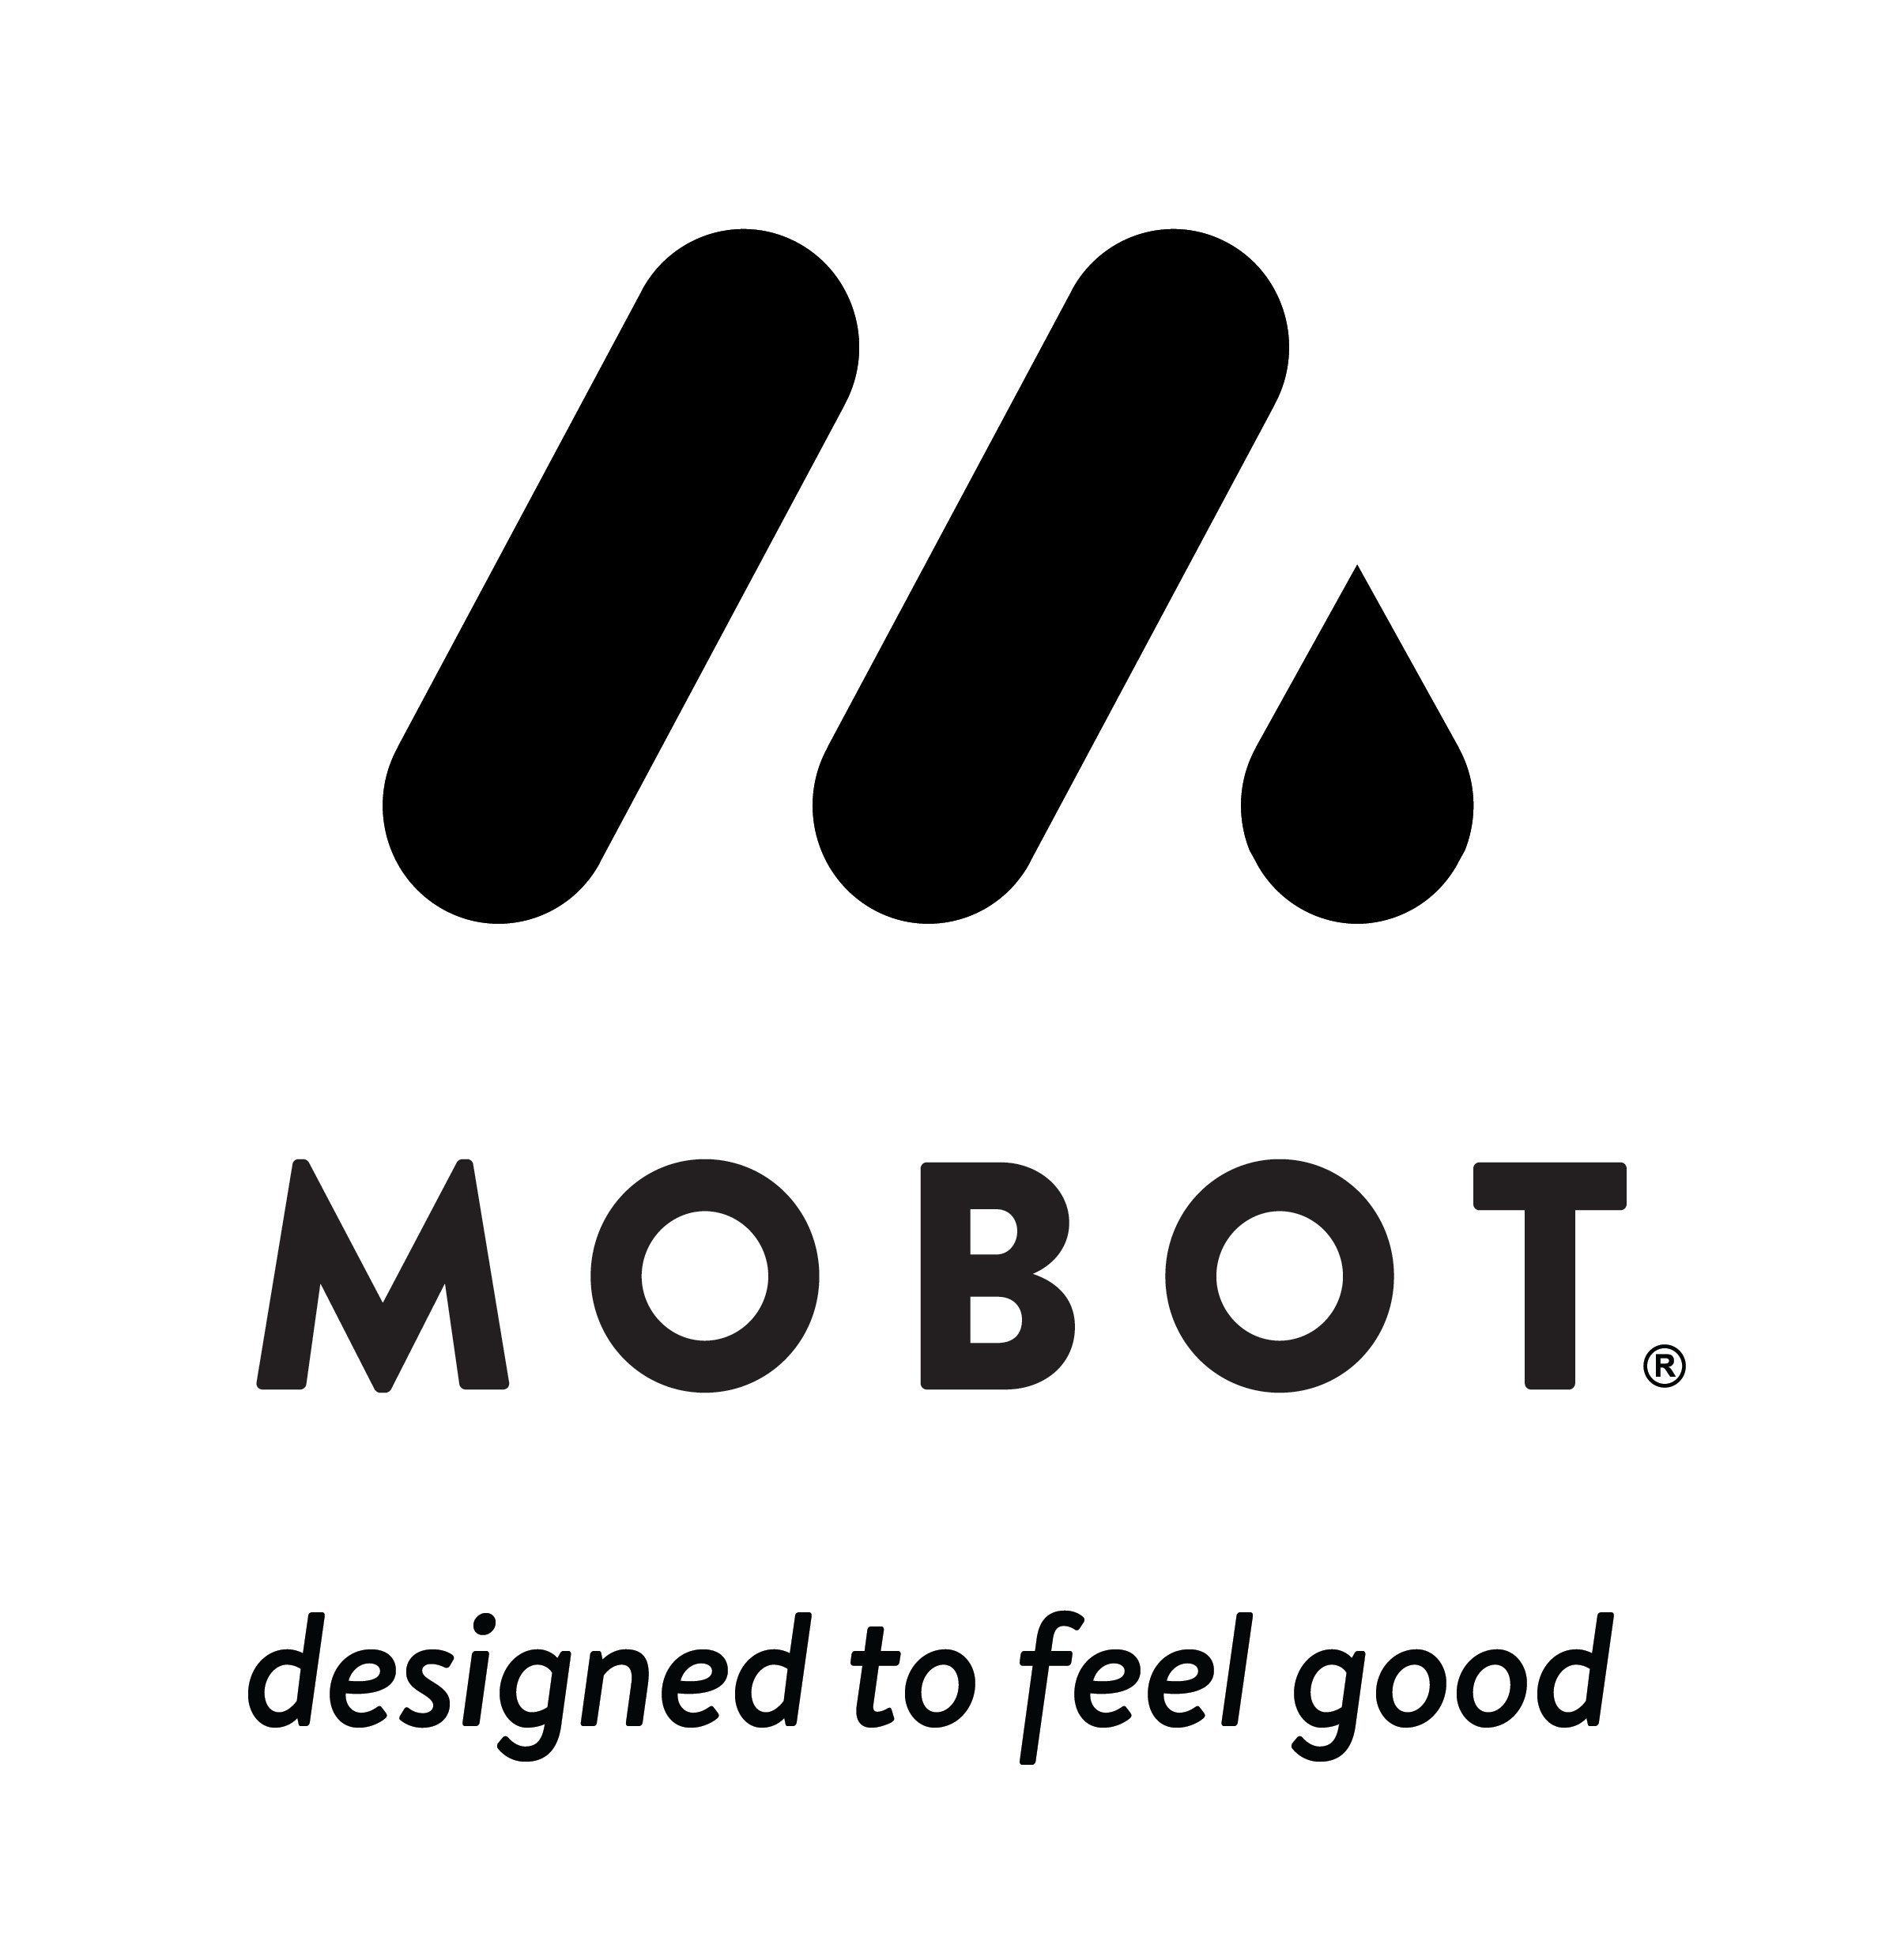 MOBOT